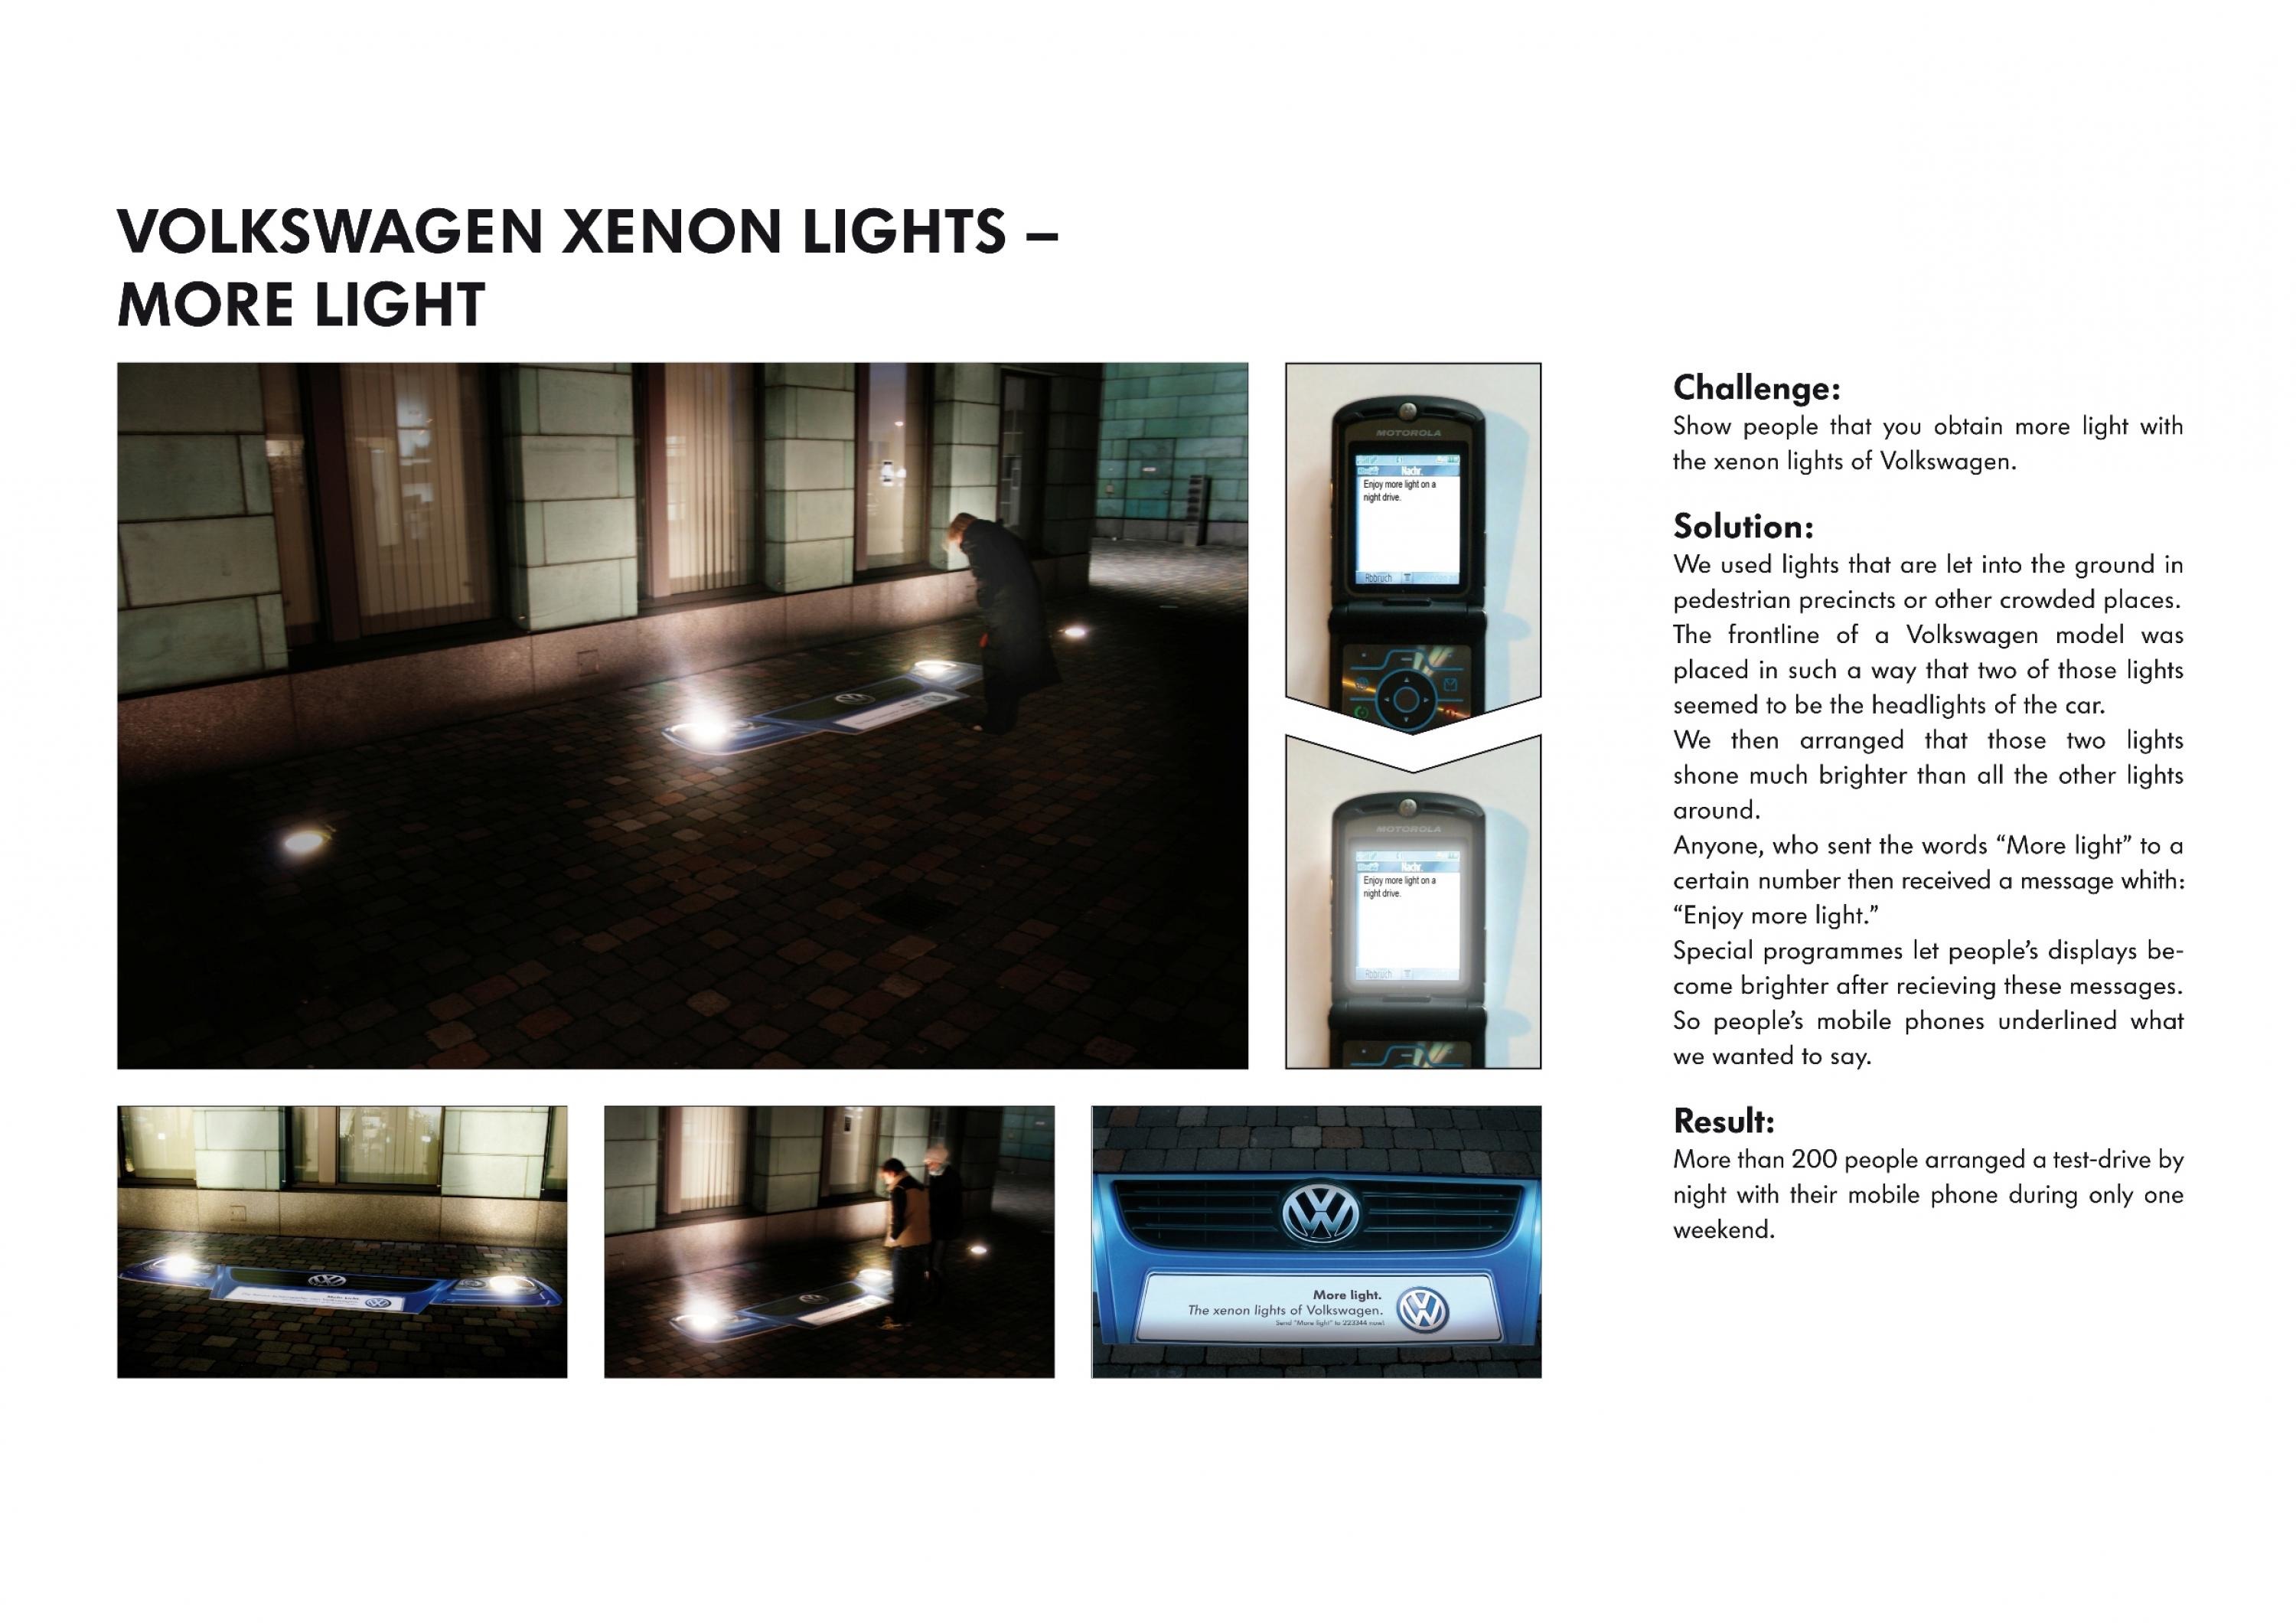 VW XENON LIGHTS